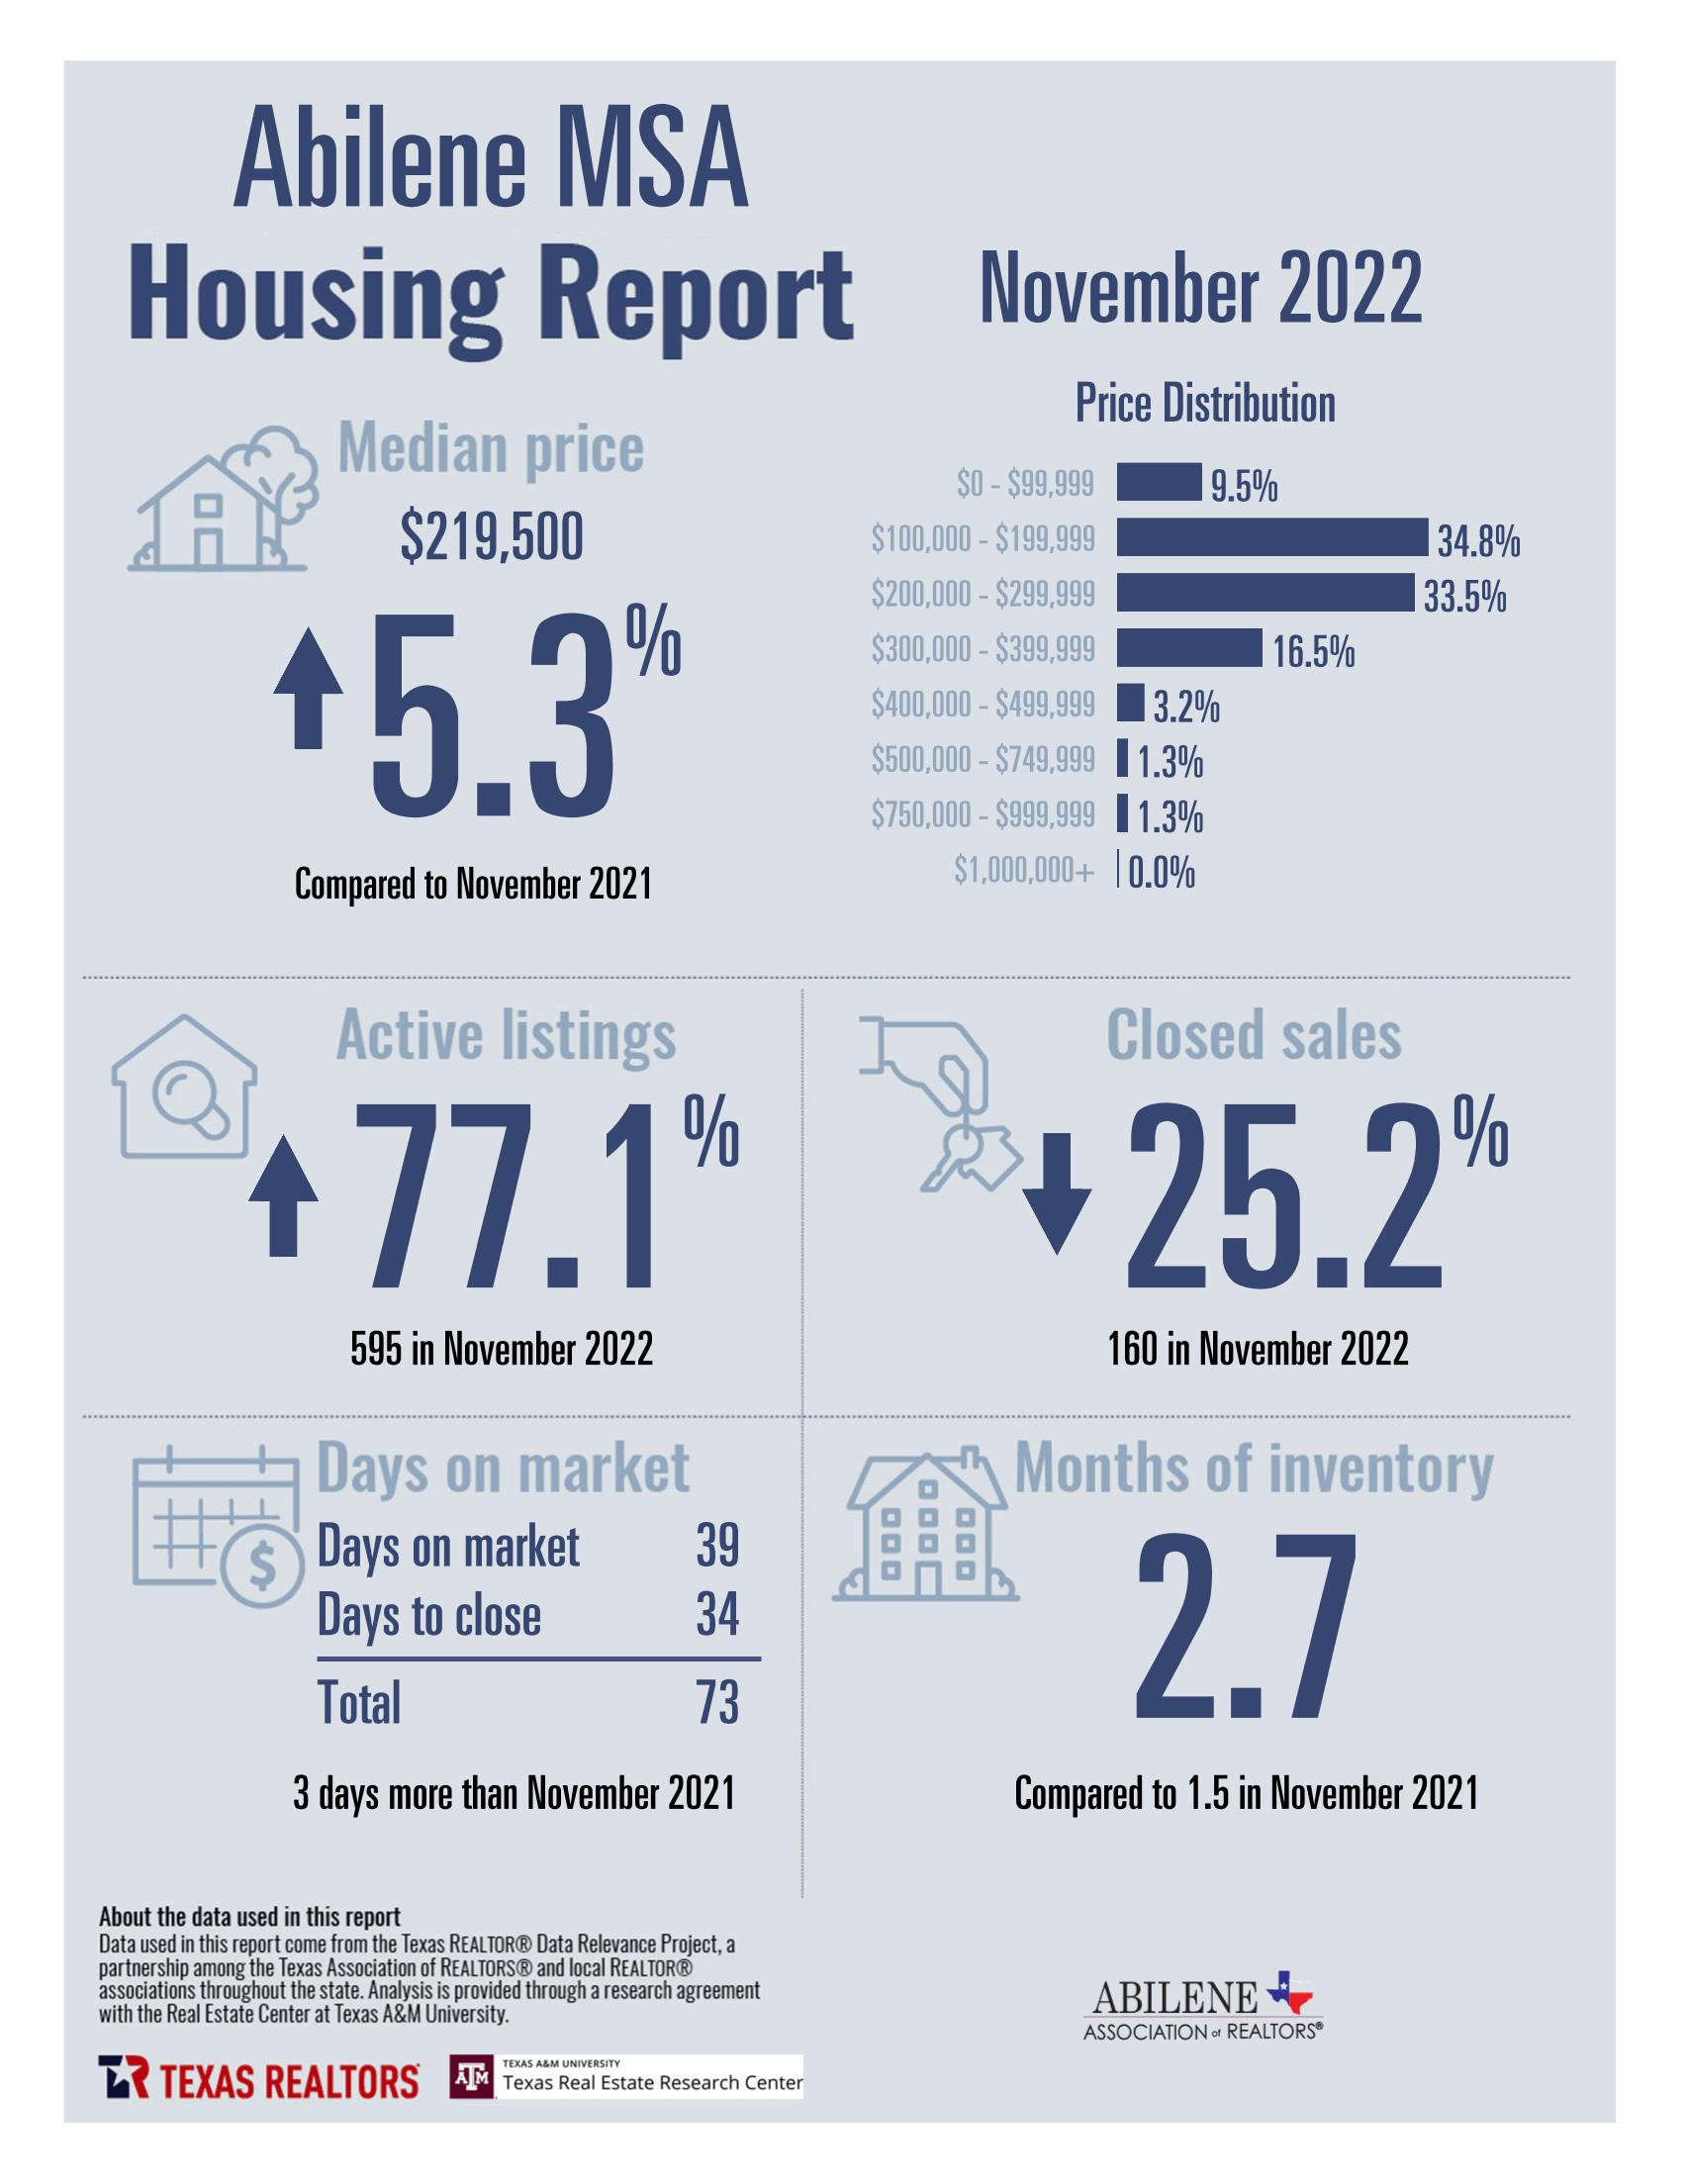 Abilene Housing Stats for November